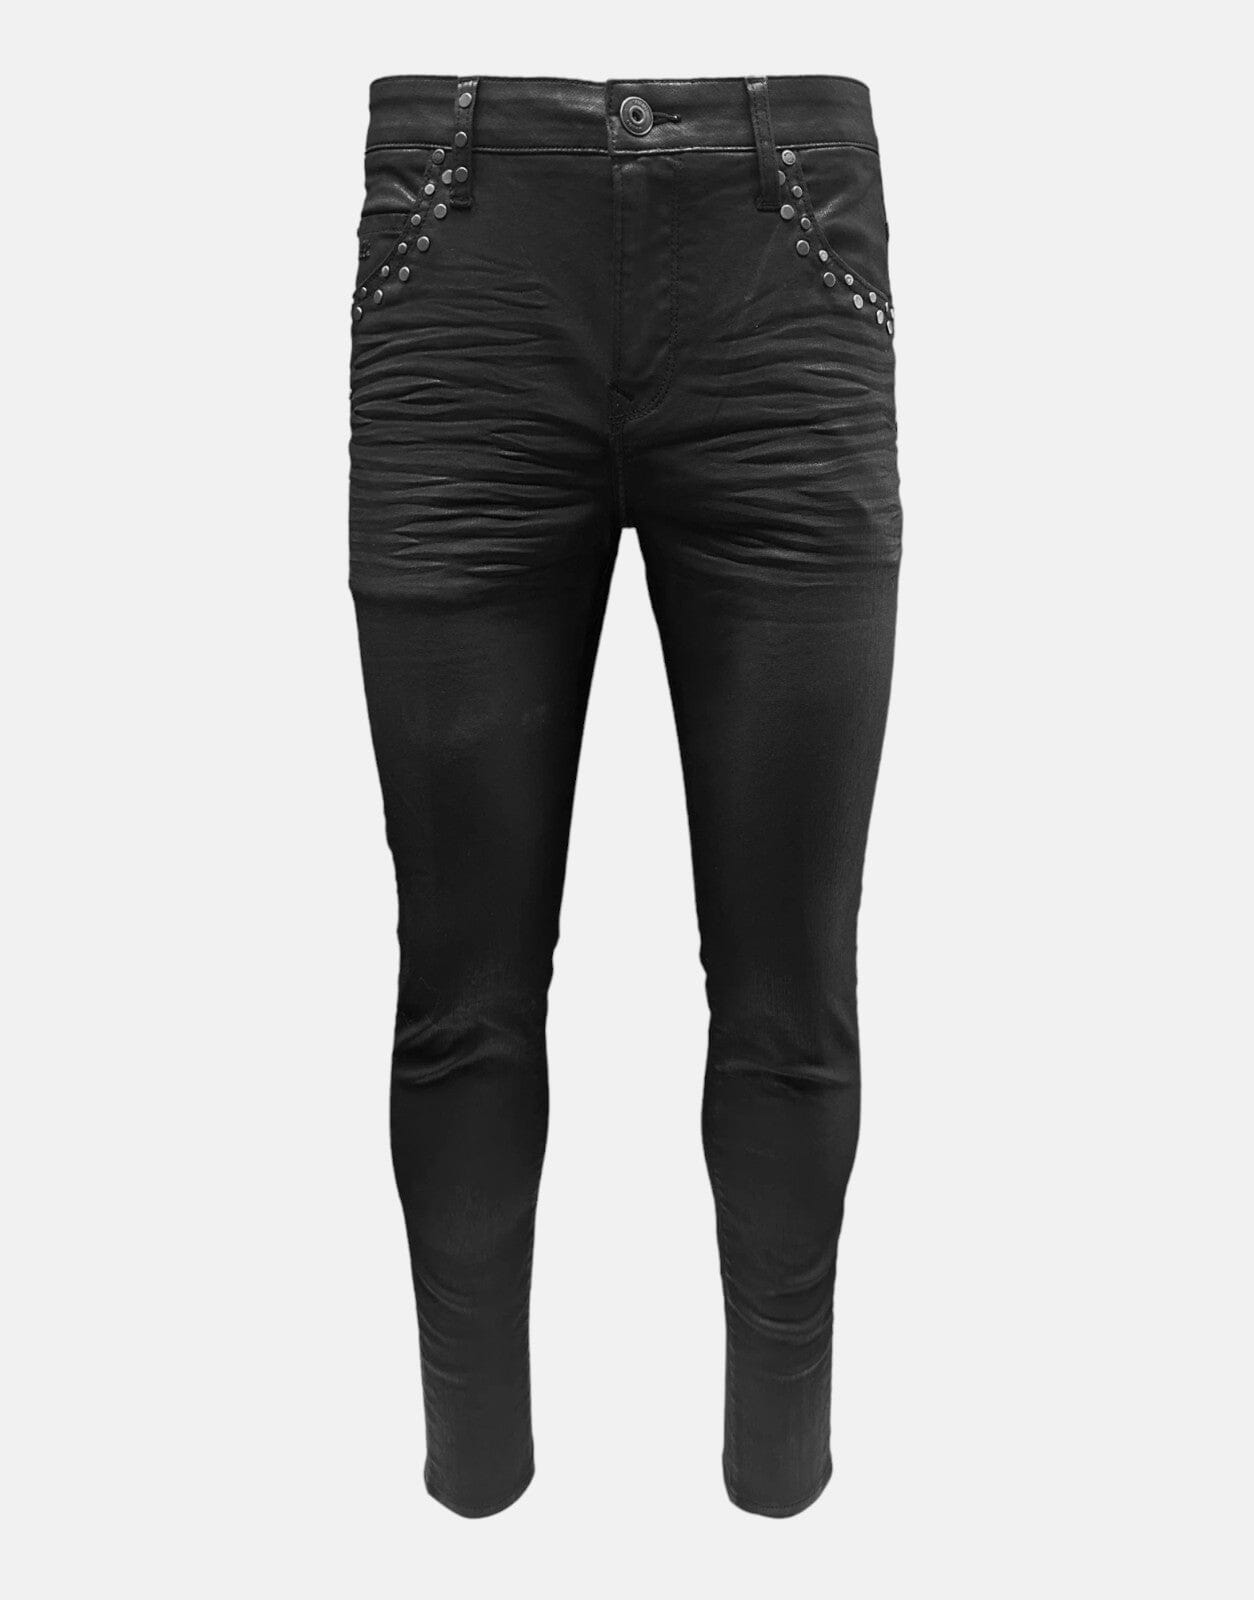 Vialli Dagger Ultra Fit Black Jeans, W36 L32 / Black